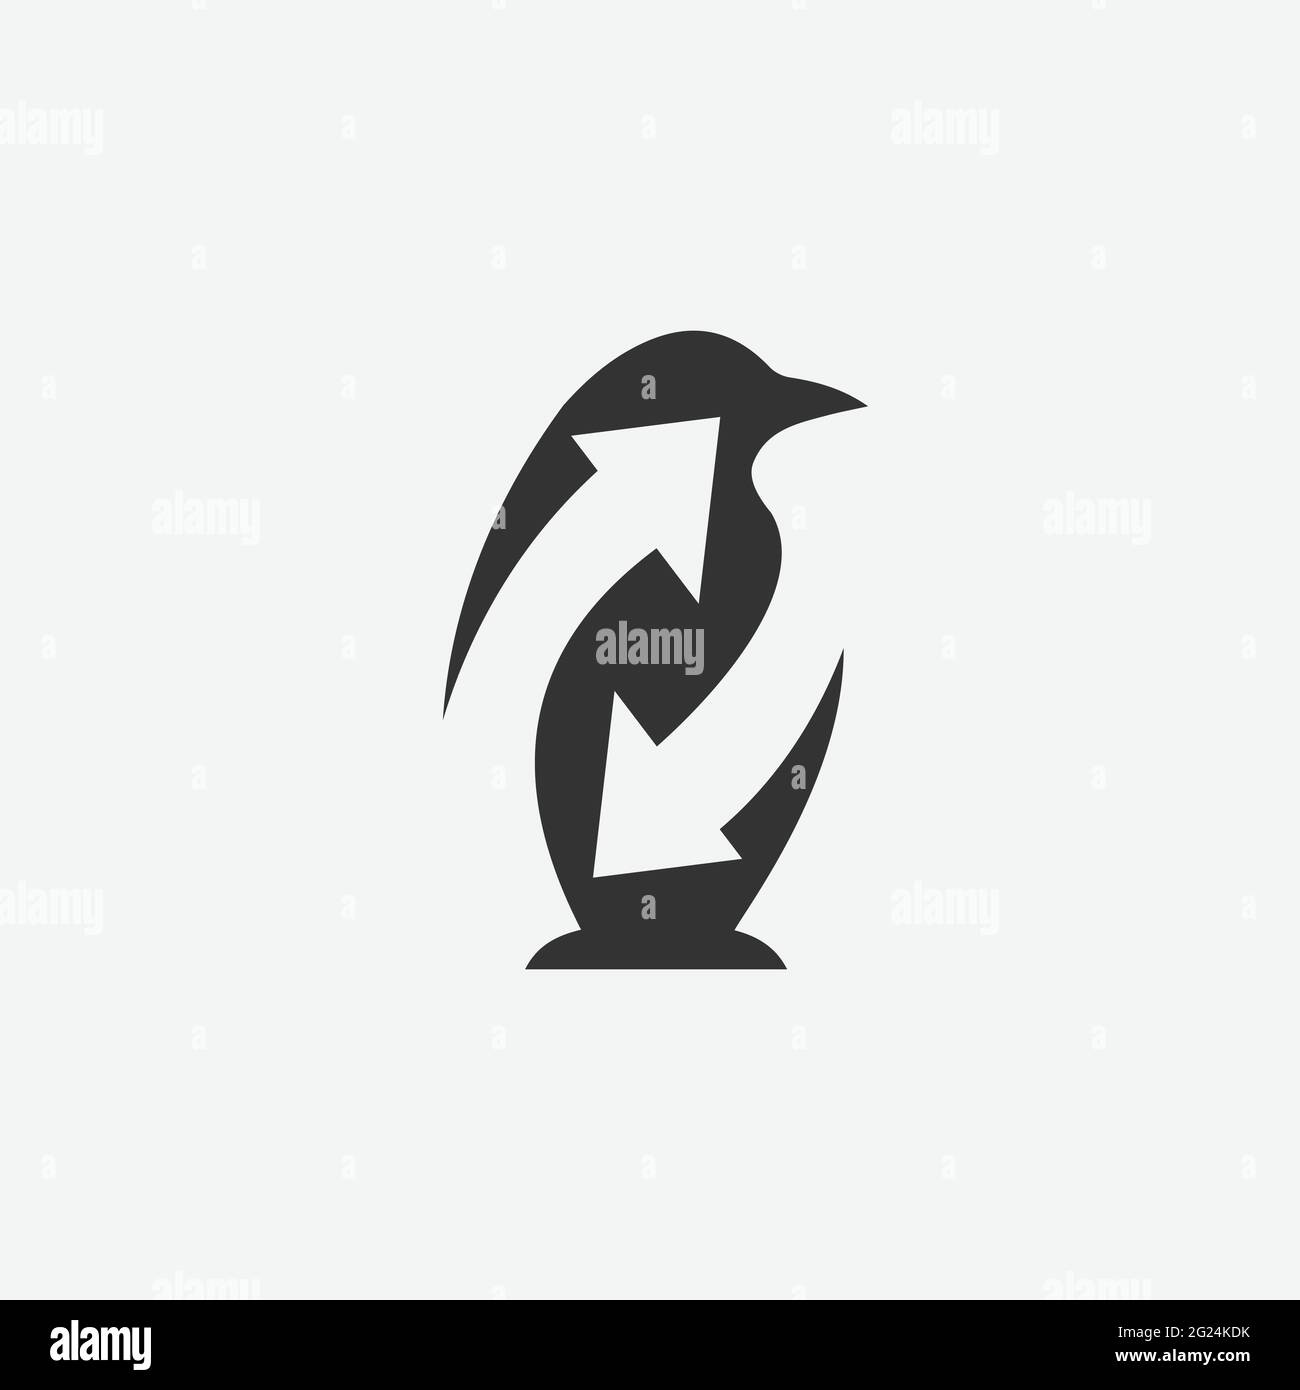 Immagine vettoriale modello logo Penguin. Pinguino con logo animale con icona a freccia nel vettore di disegno stile spazio negativo Illustrazione Vettoriale